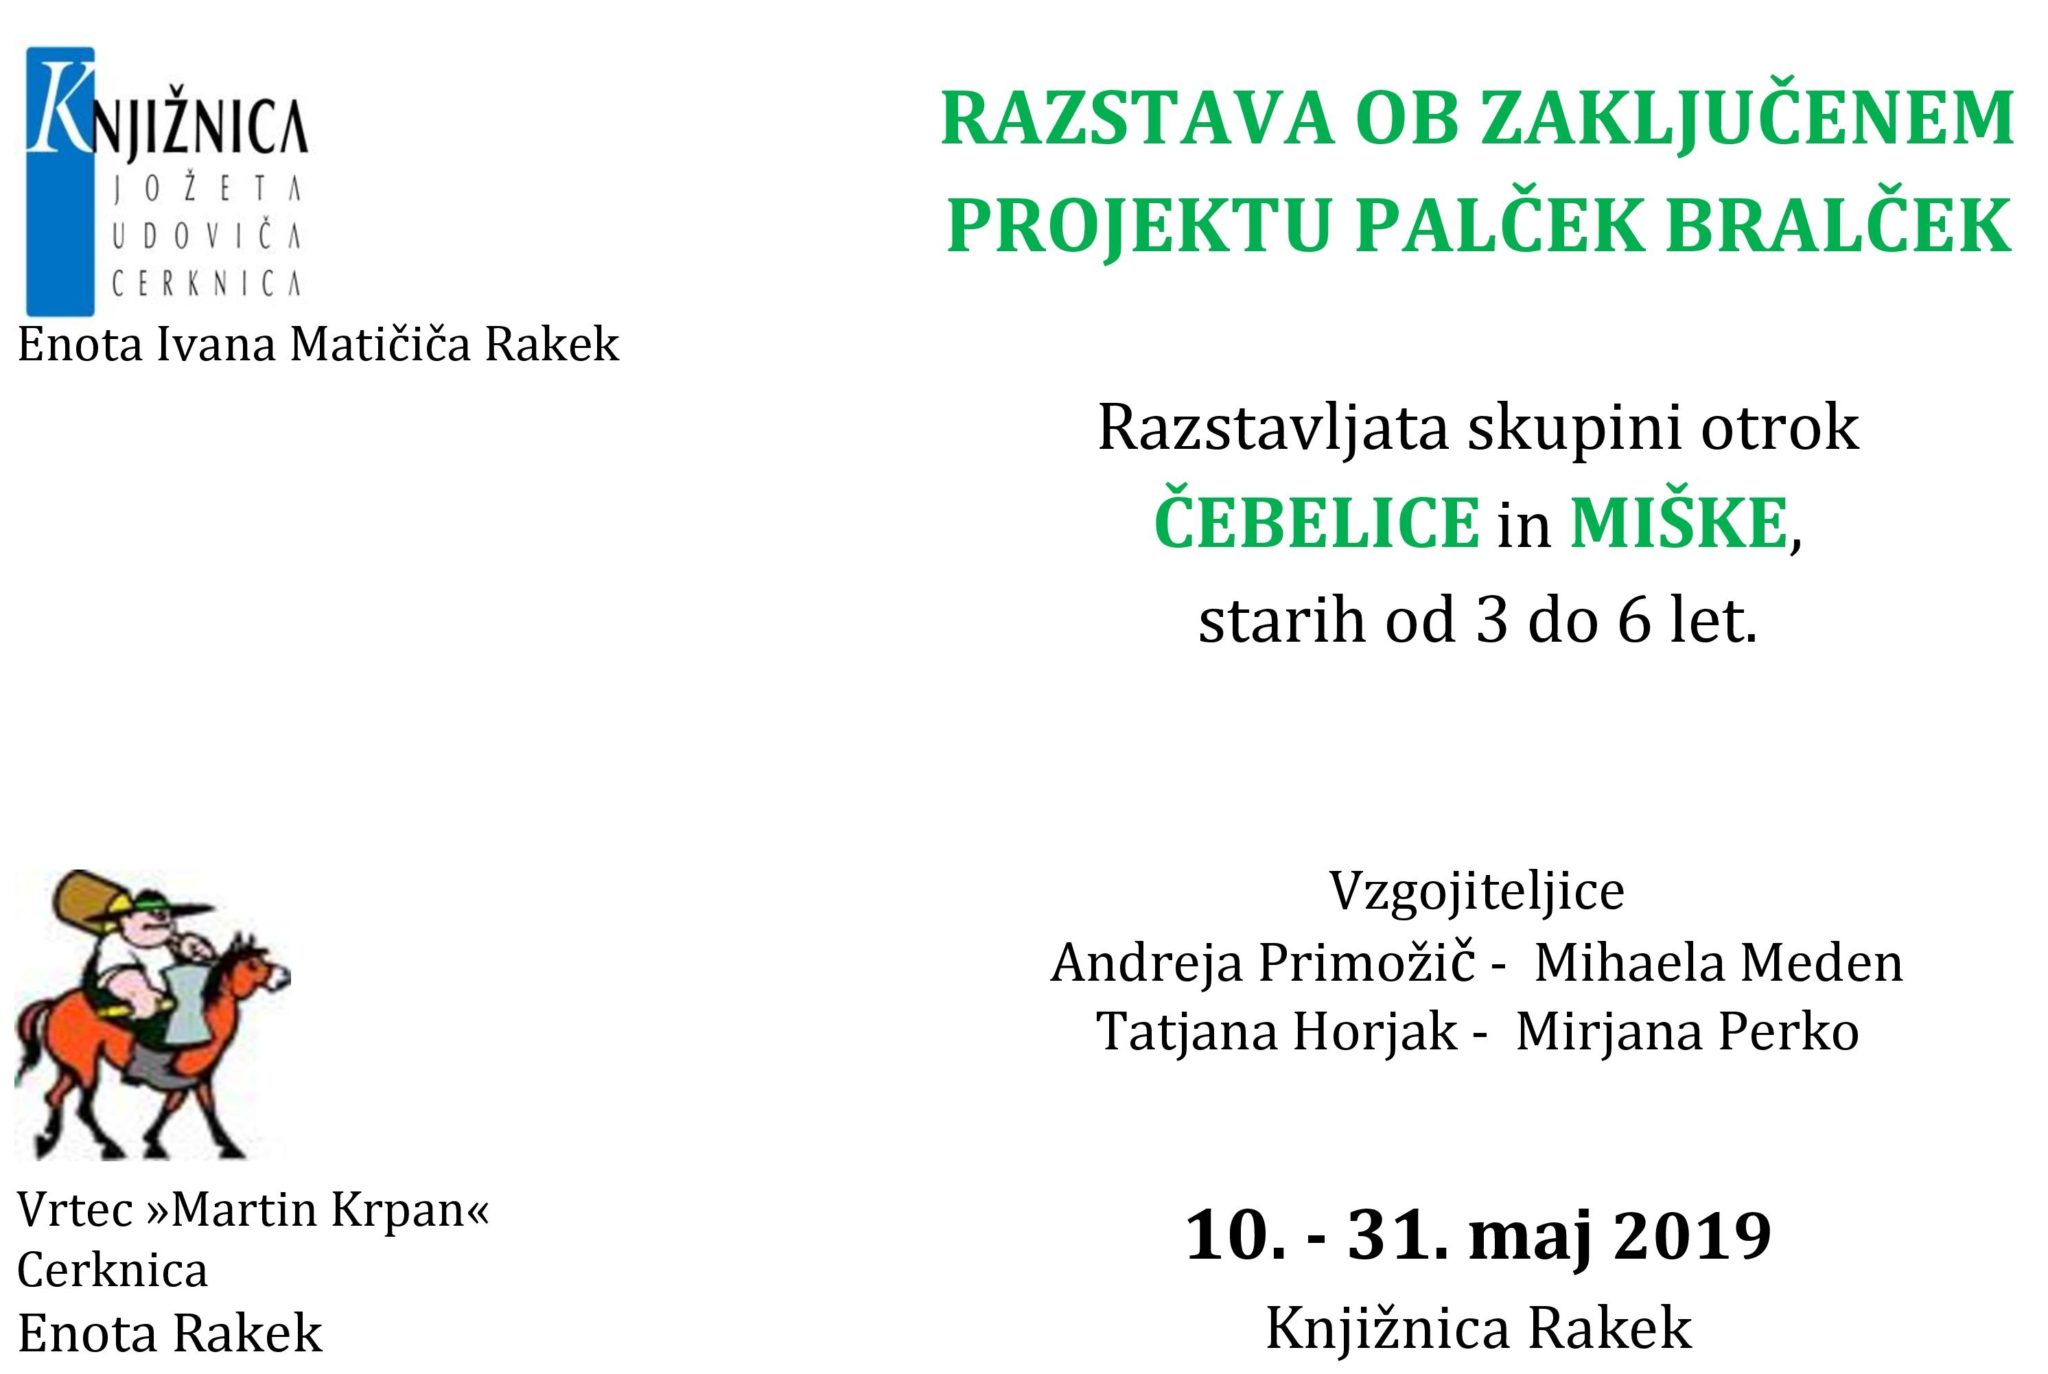 cover 3 - Razstava ob zaključenem projektu Palček Bralček